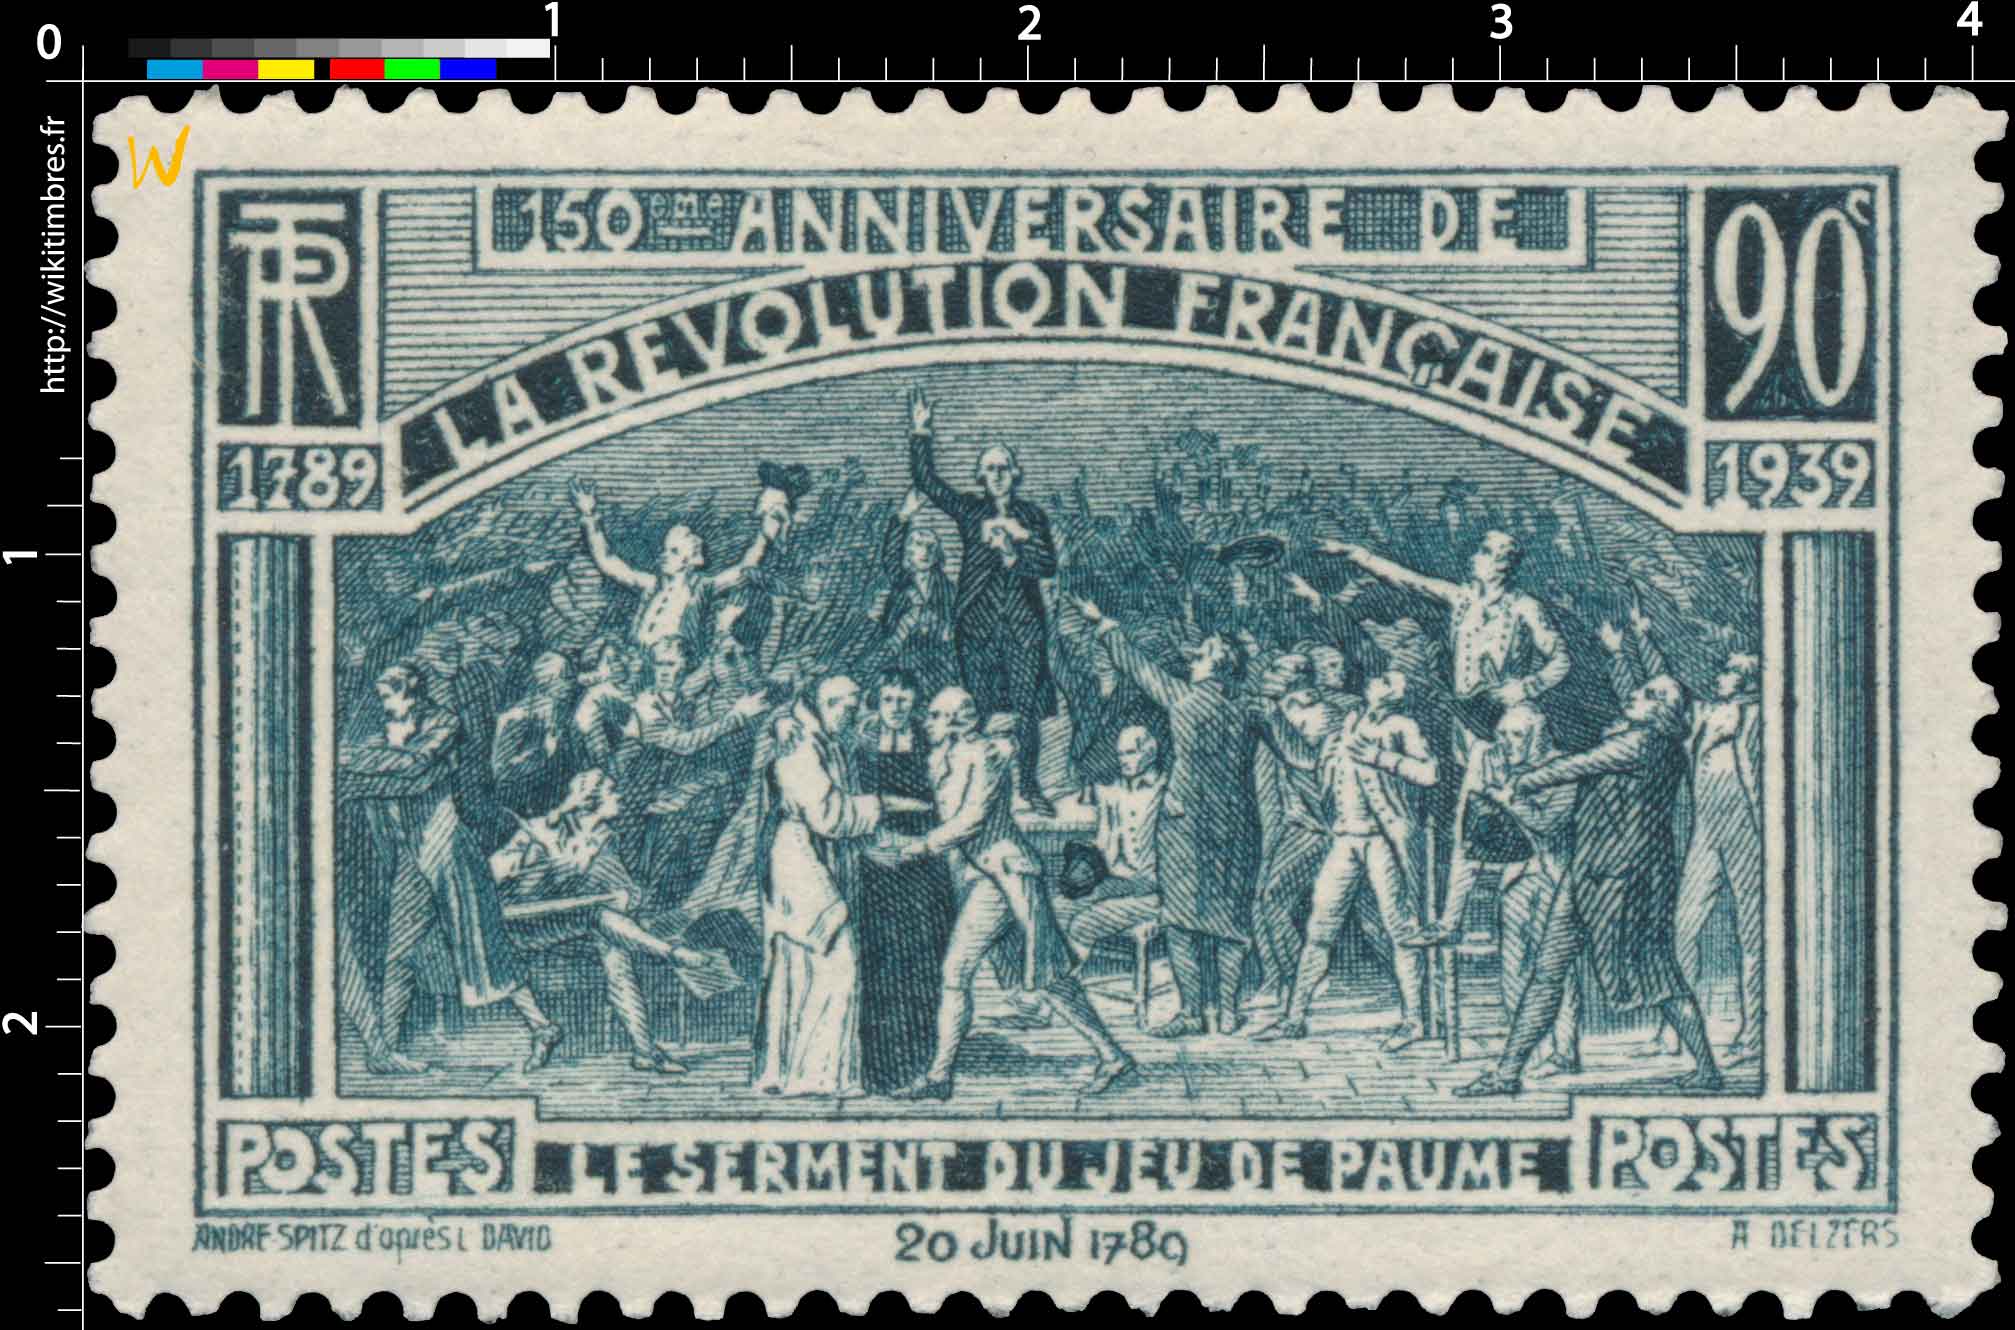 150ème ANNIVERSAIRE DE LA RÉVOLUTION FRANÇAISE 1789-1939 LE SERMENT DU JEU DE PAUME 20 juin 1789